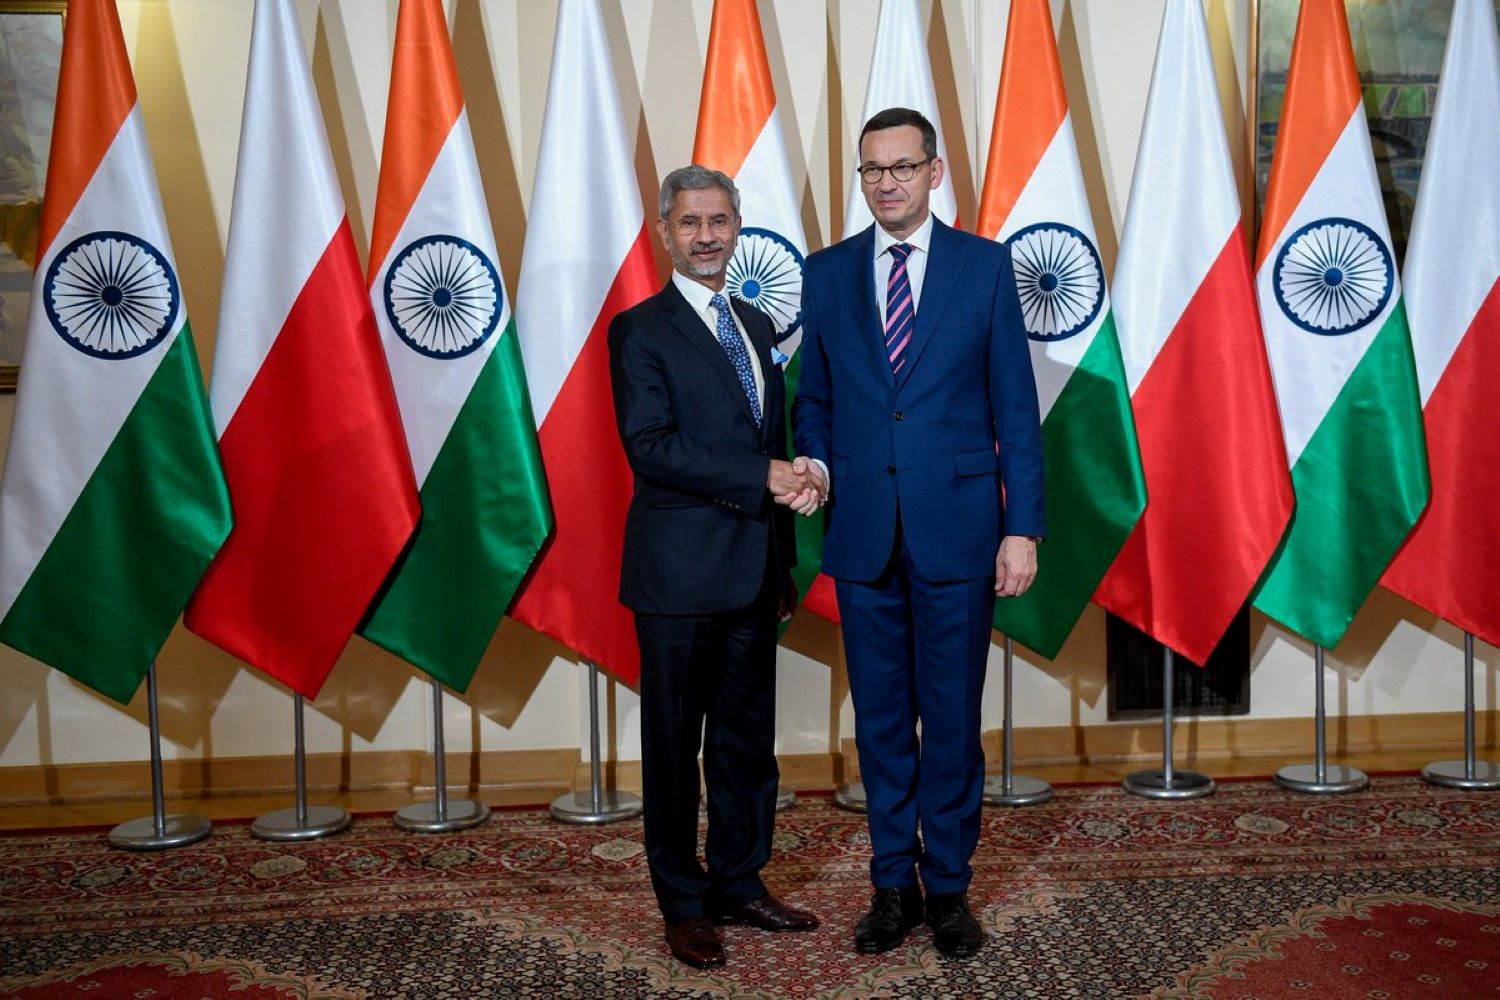 Orlin i ArcelorMittal wzmacniają relacje handlowe między Polską a Indiami